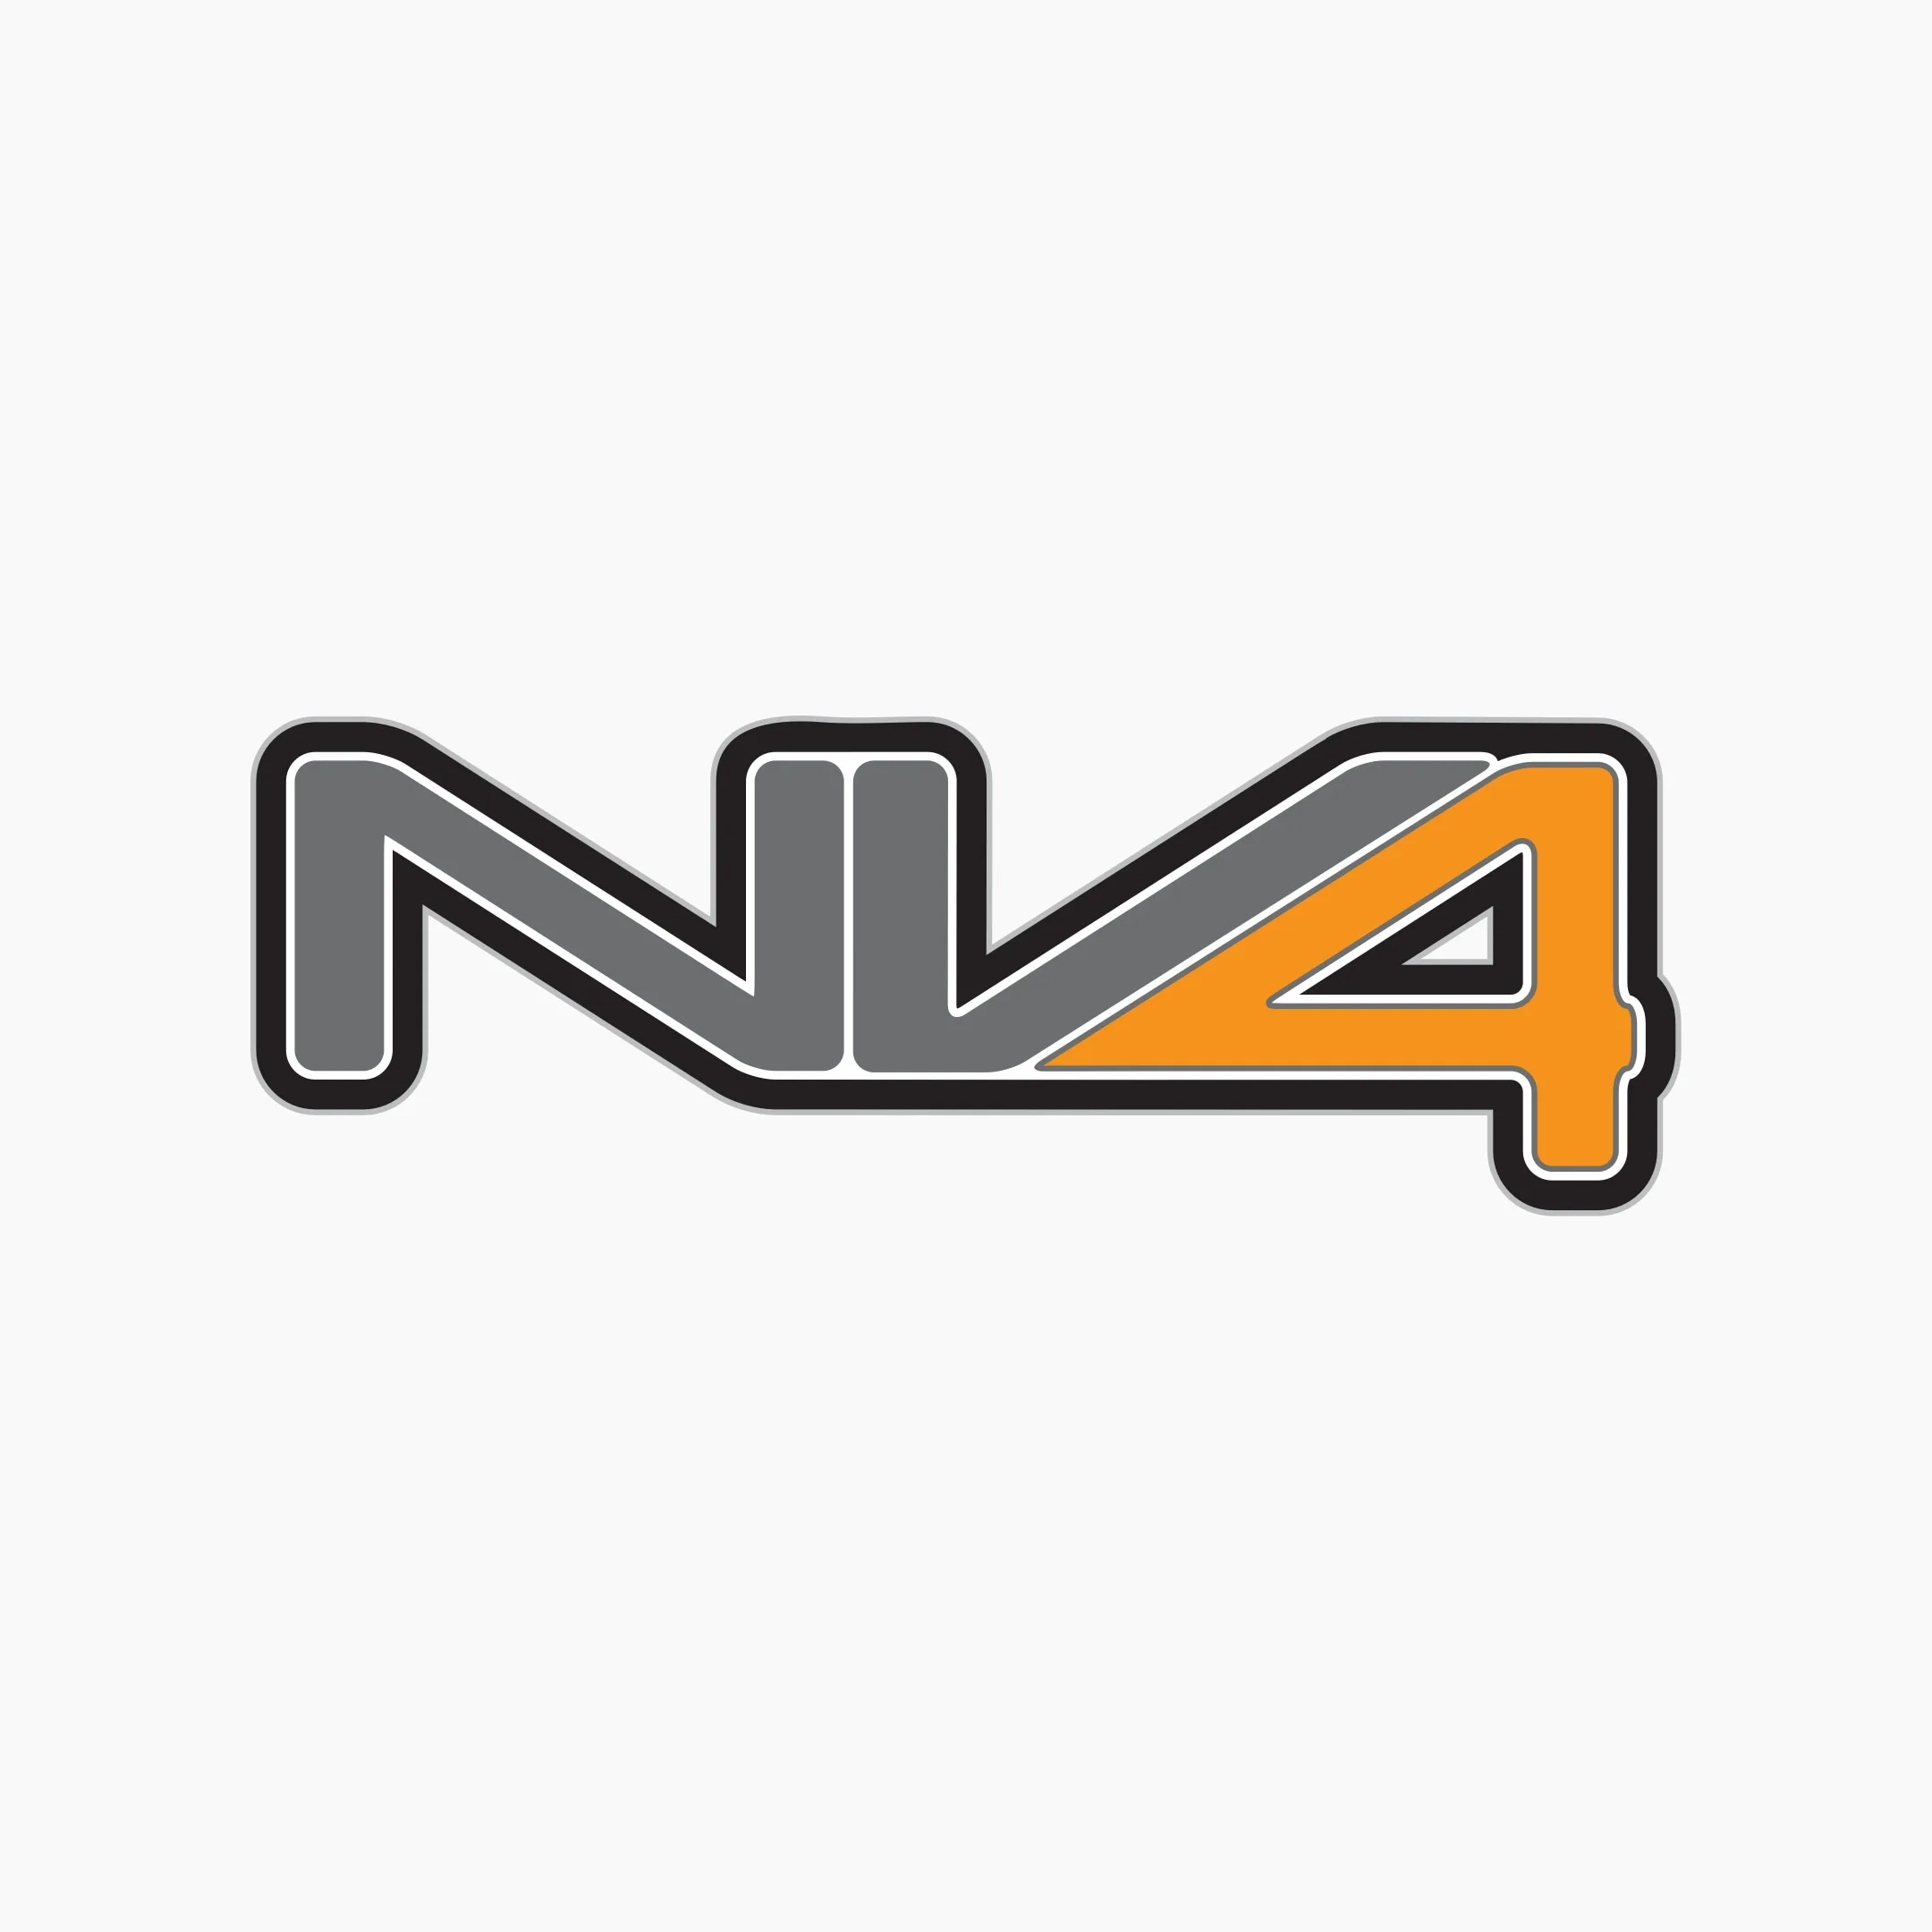 NV4 logo